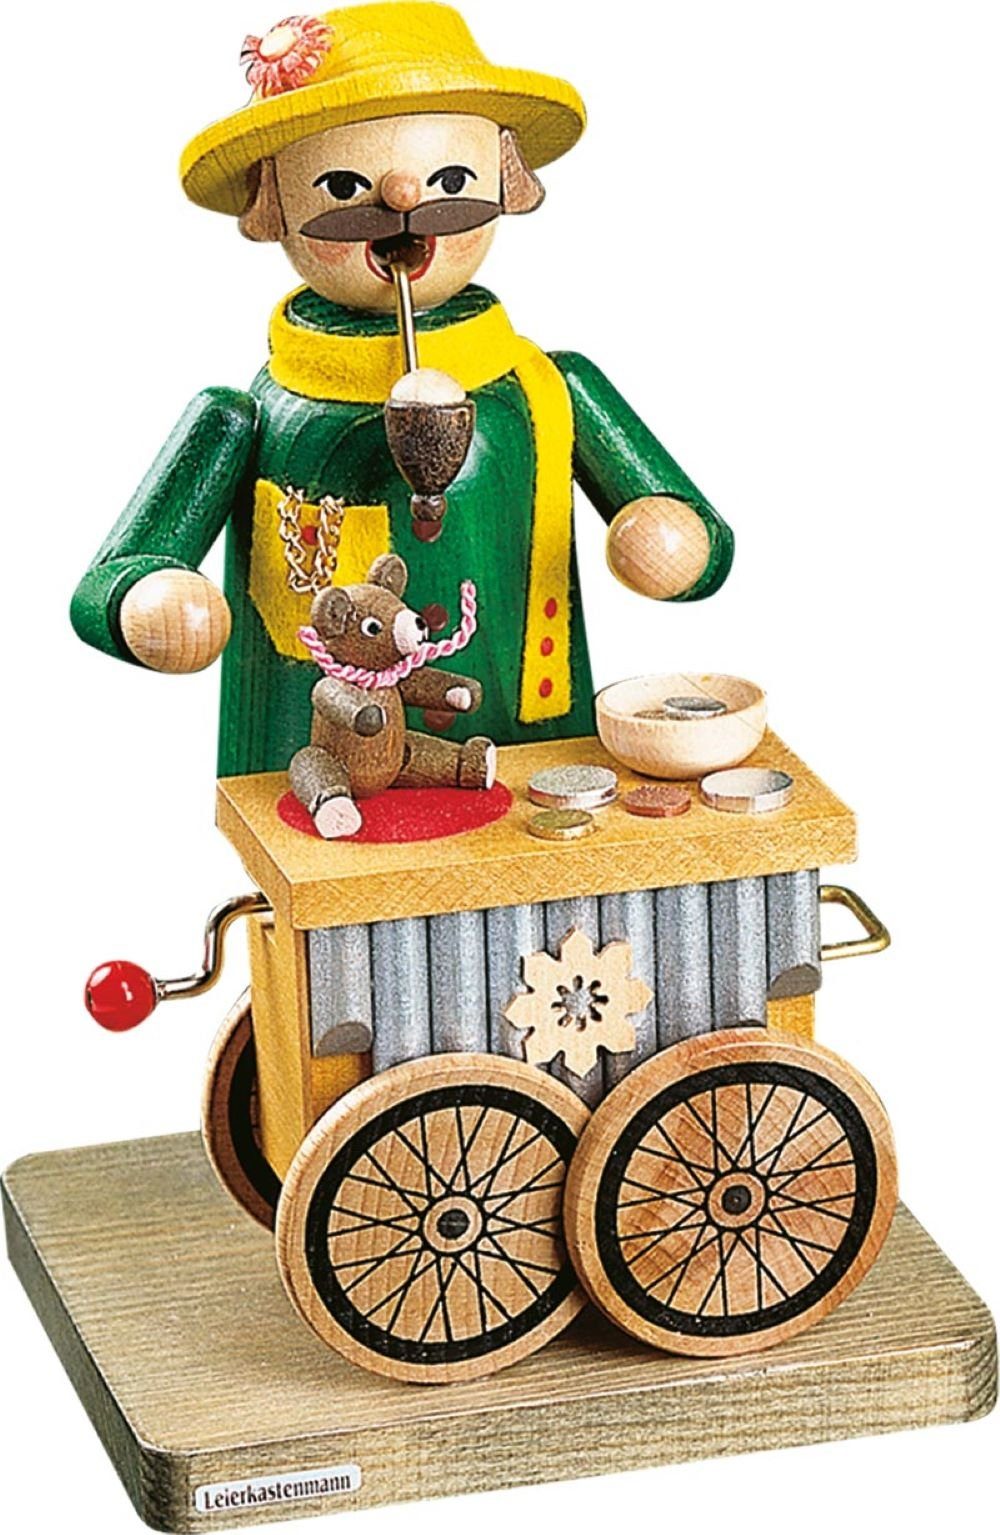 Richard Glaesser Erzgebirge mit Räuchermännchen Handwerkskunst Höhe original Spielwerk, Leierkastenmann 17cm